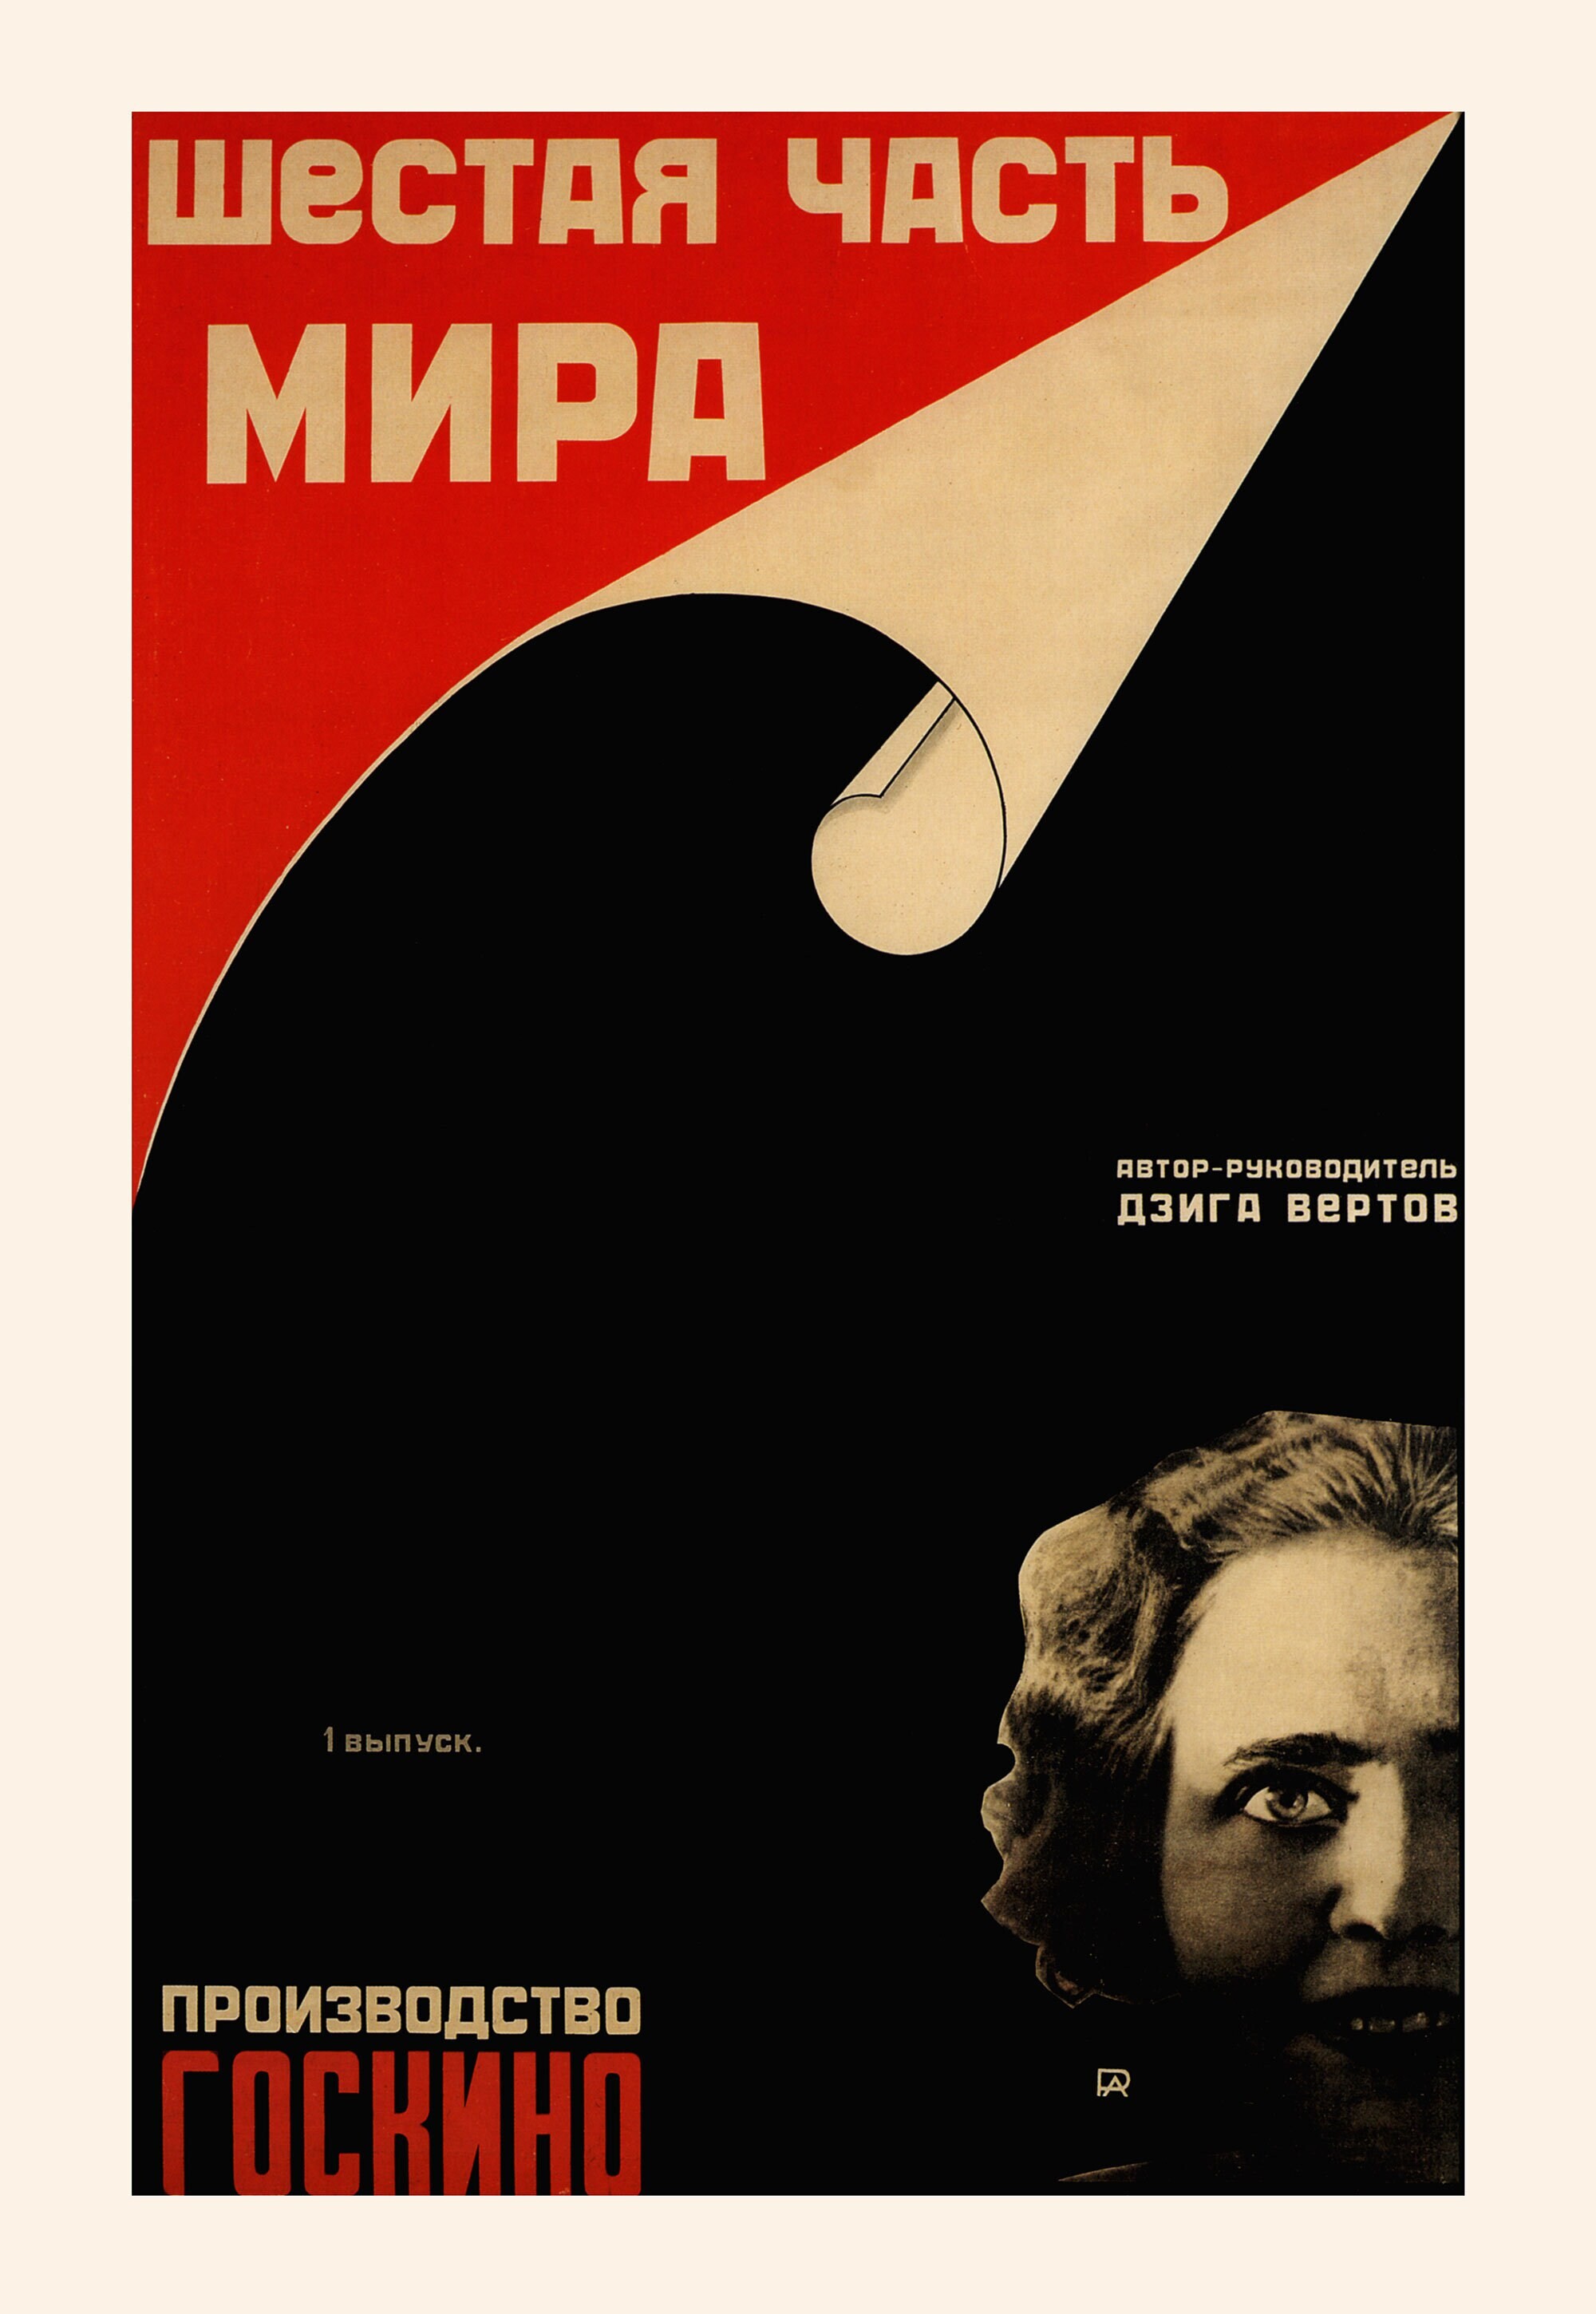 Шестая часть мира, 1926 год,  режиссёр Дзига Вертов, плакат к фильму, автор Александр Родченко (авангардное советское искусство, 1920-е)